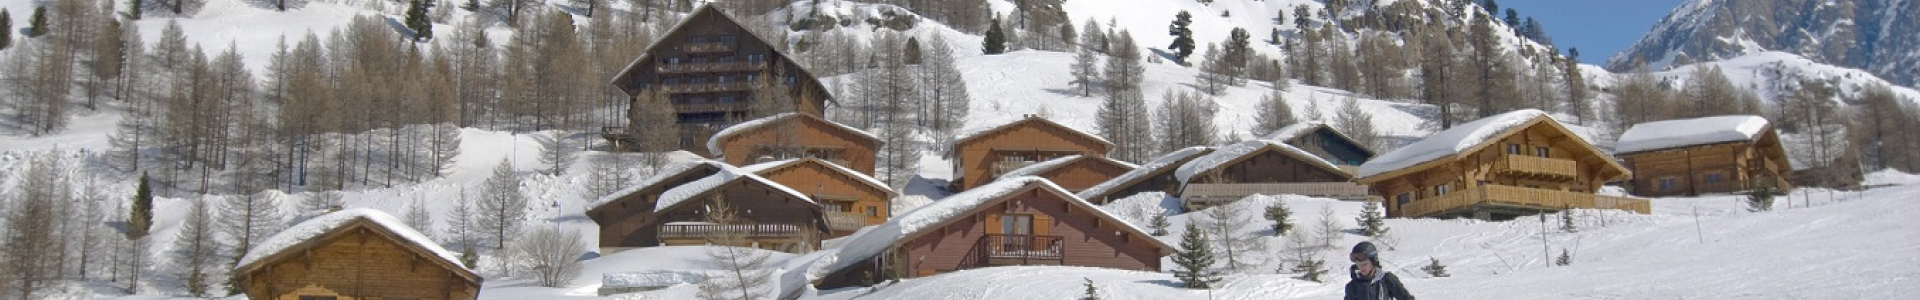 Madame Vacances : ski, week-ends 3j/2n en résidence, dès 25 €/pers.